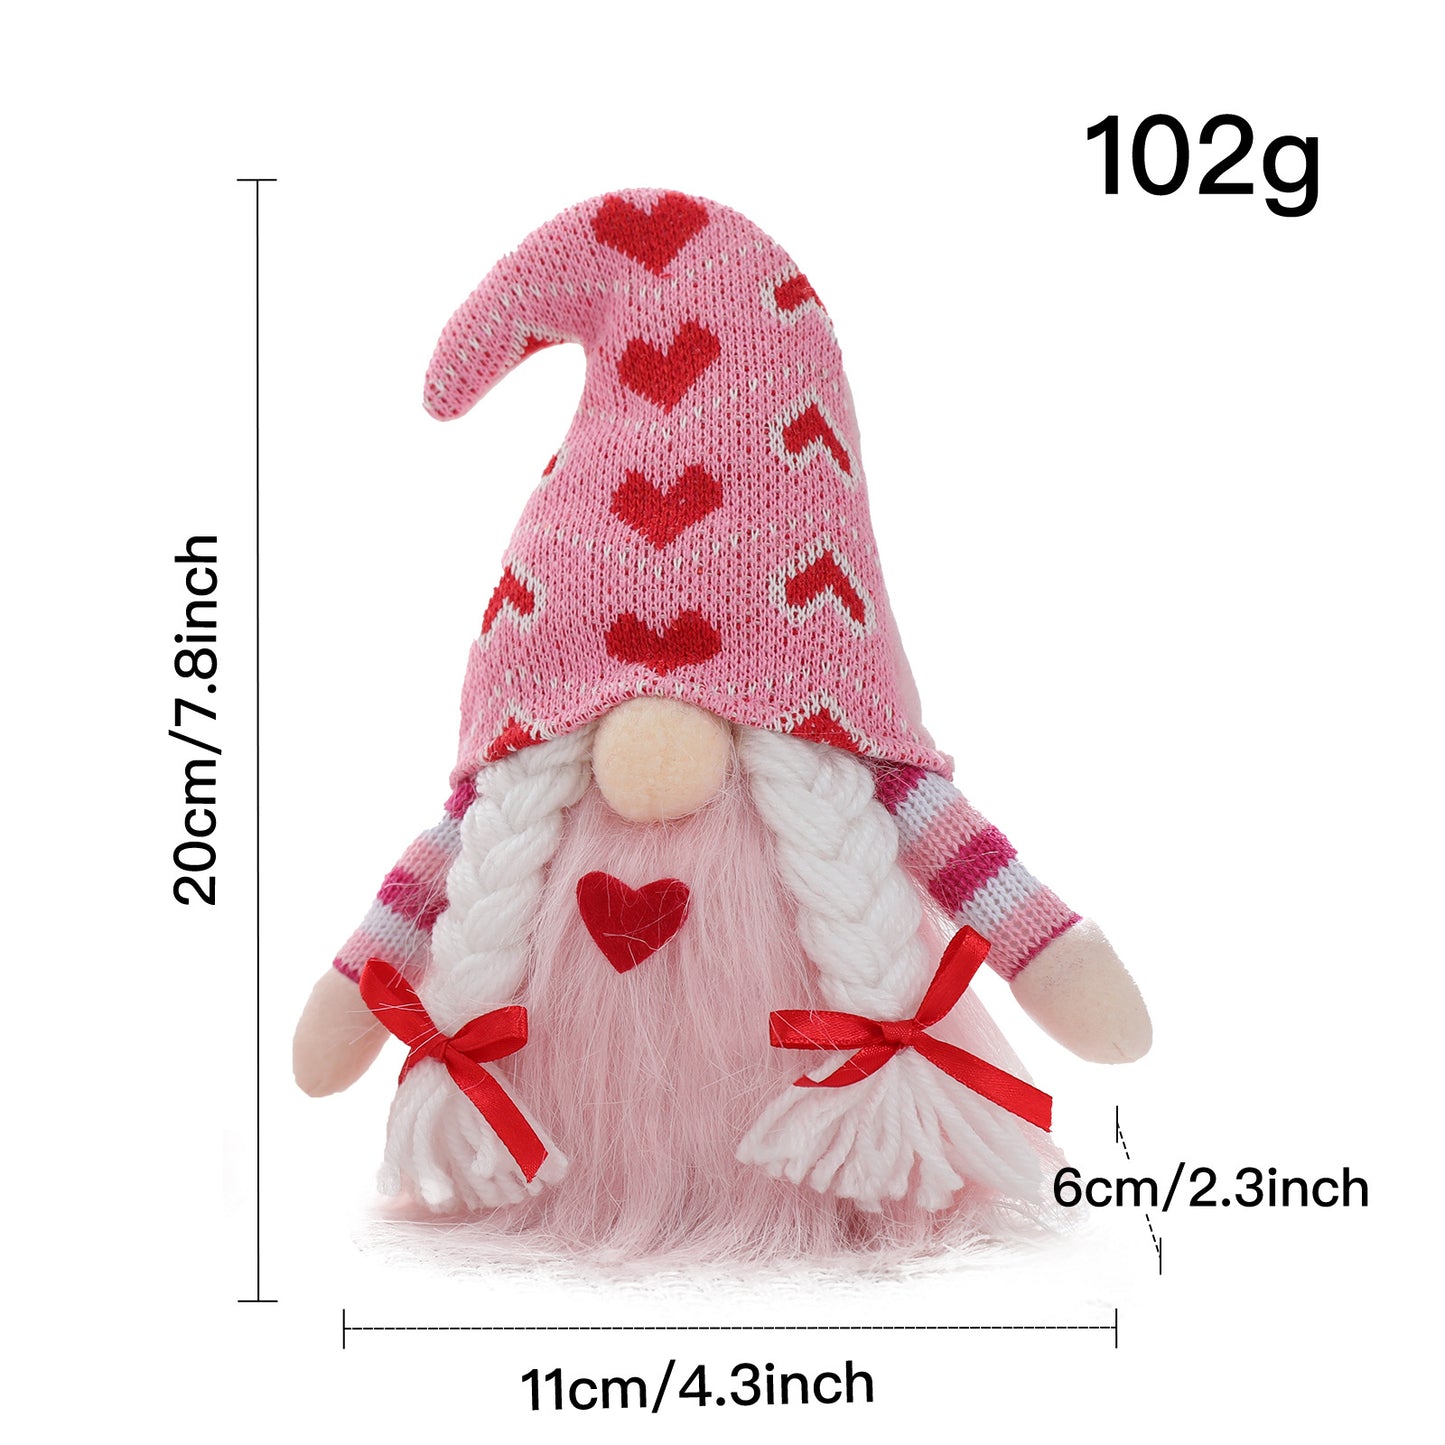 Valentine Heart Gnome